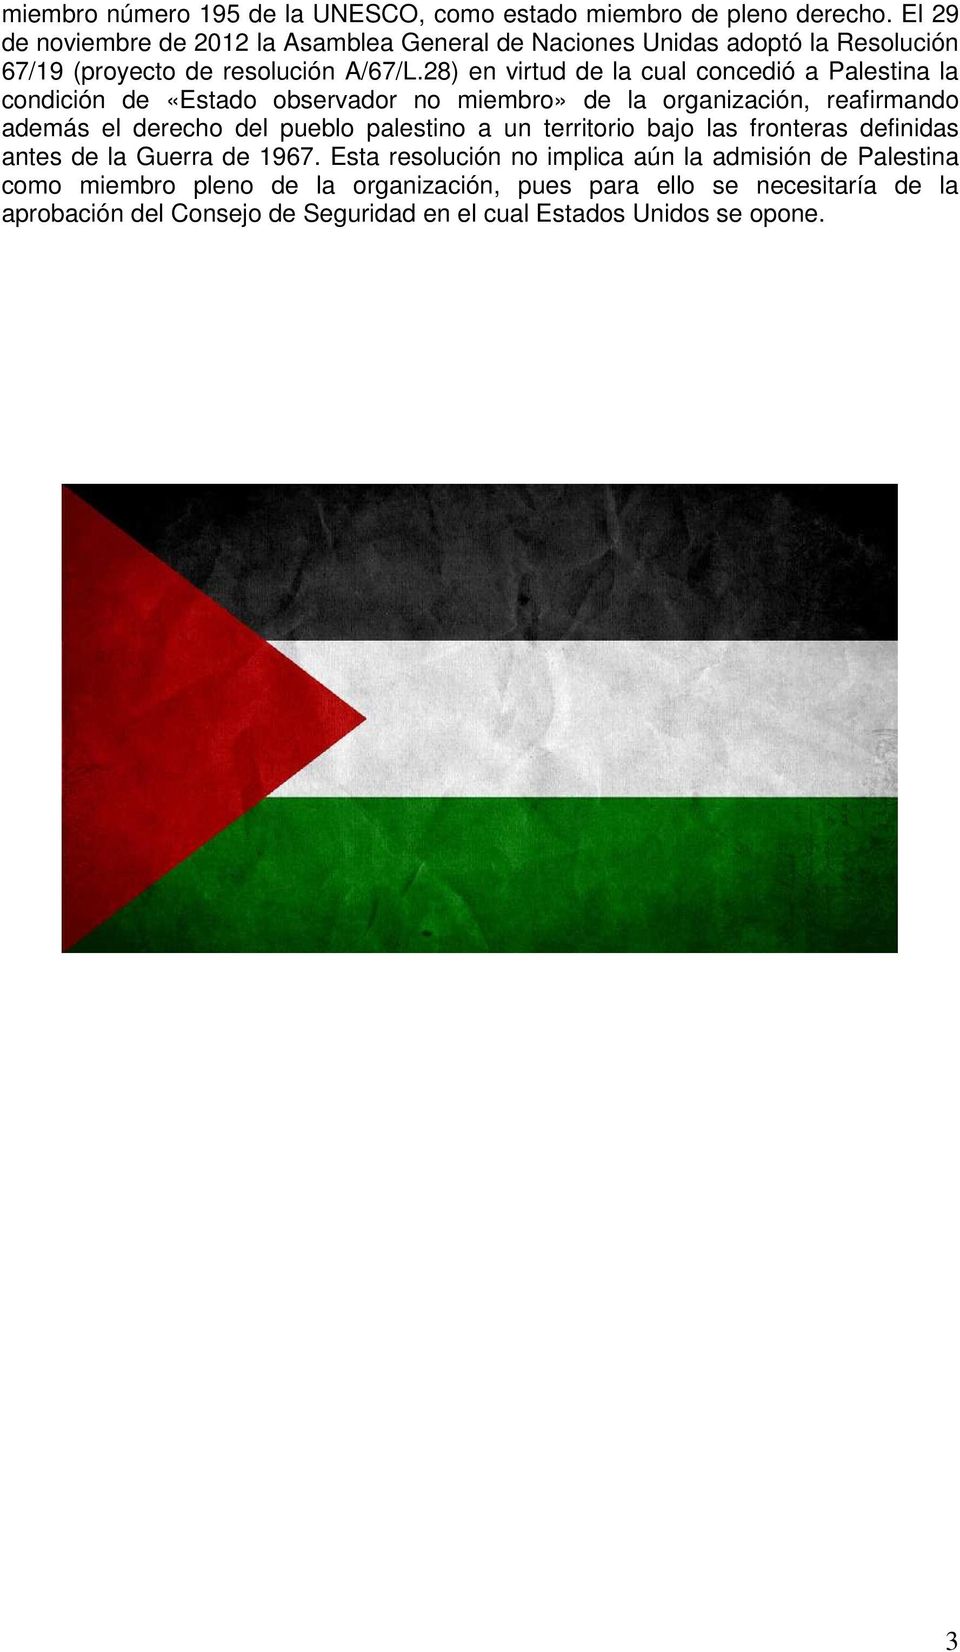 28) en virtud de la cual concedió a Palestina la condición de «Estado observador no miembro» de la organización, reafirmando además el derecho del pueblo